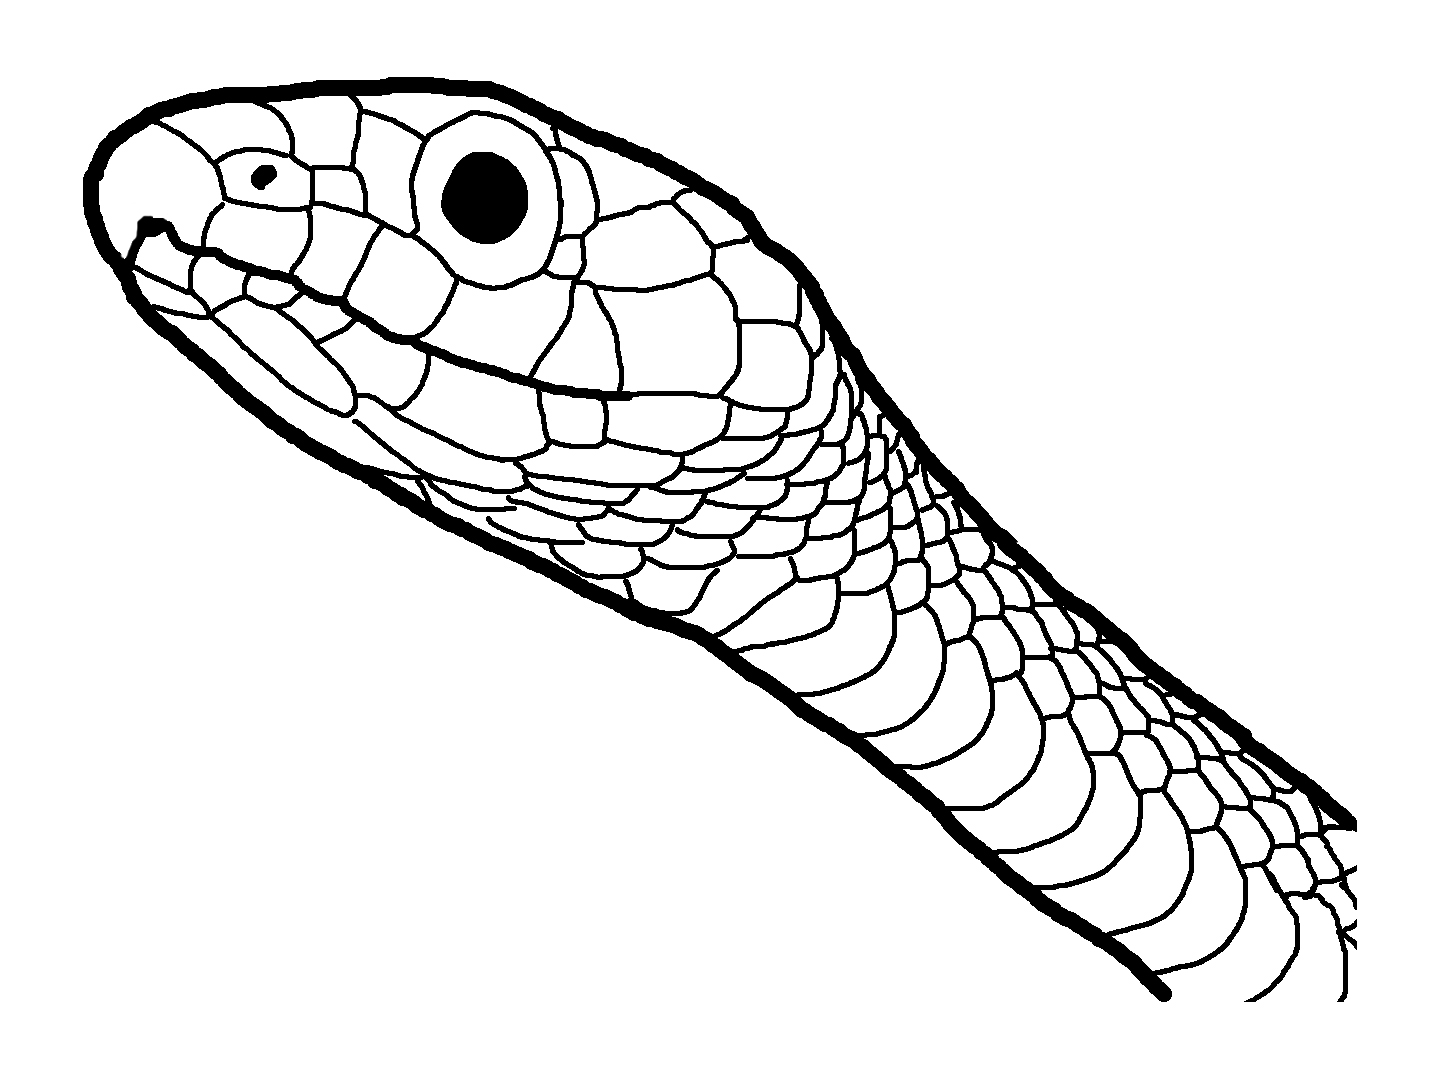 Tranh tô màu đầu con rắn